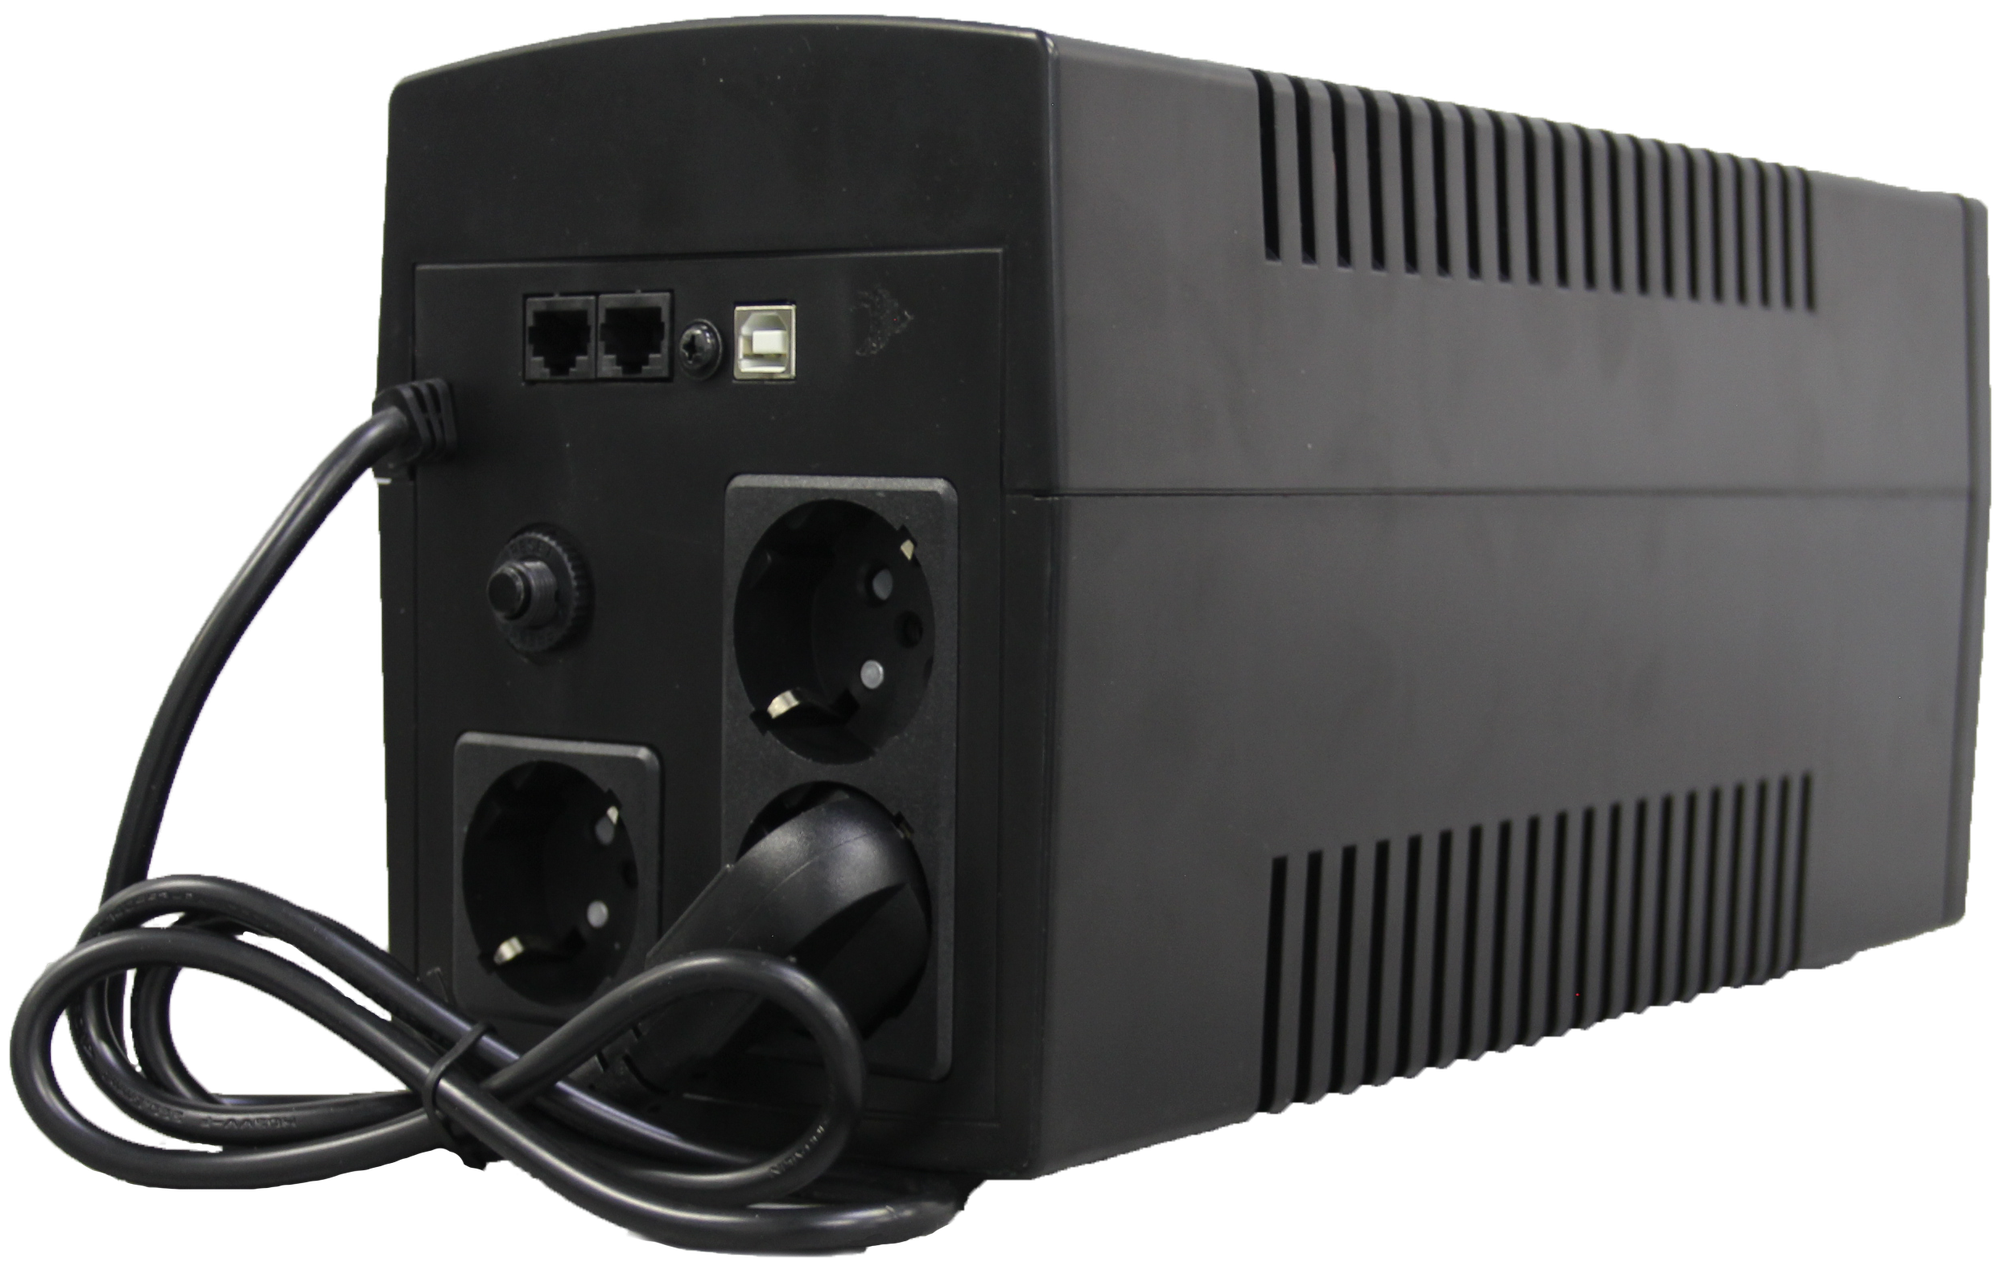 ИБП AKEL D412-HOME/Smart UPS/AVR Мощность 1200 ВА/ЖК Дисплей/Для Защиты ПК/Сервера/ 1